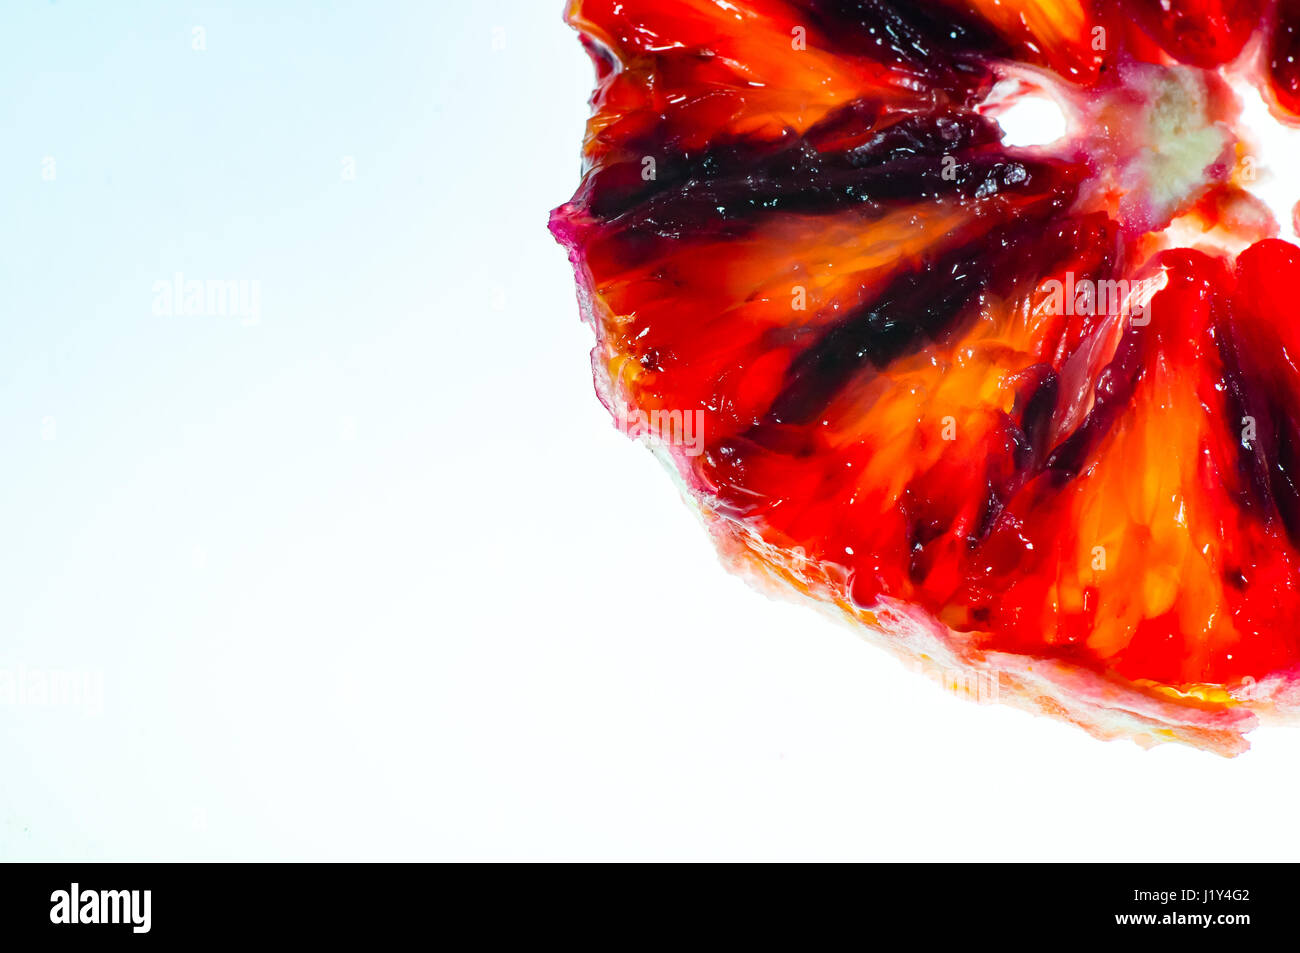 Peeled, slice of blood orange, against lightbox, close-up Stock Photo